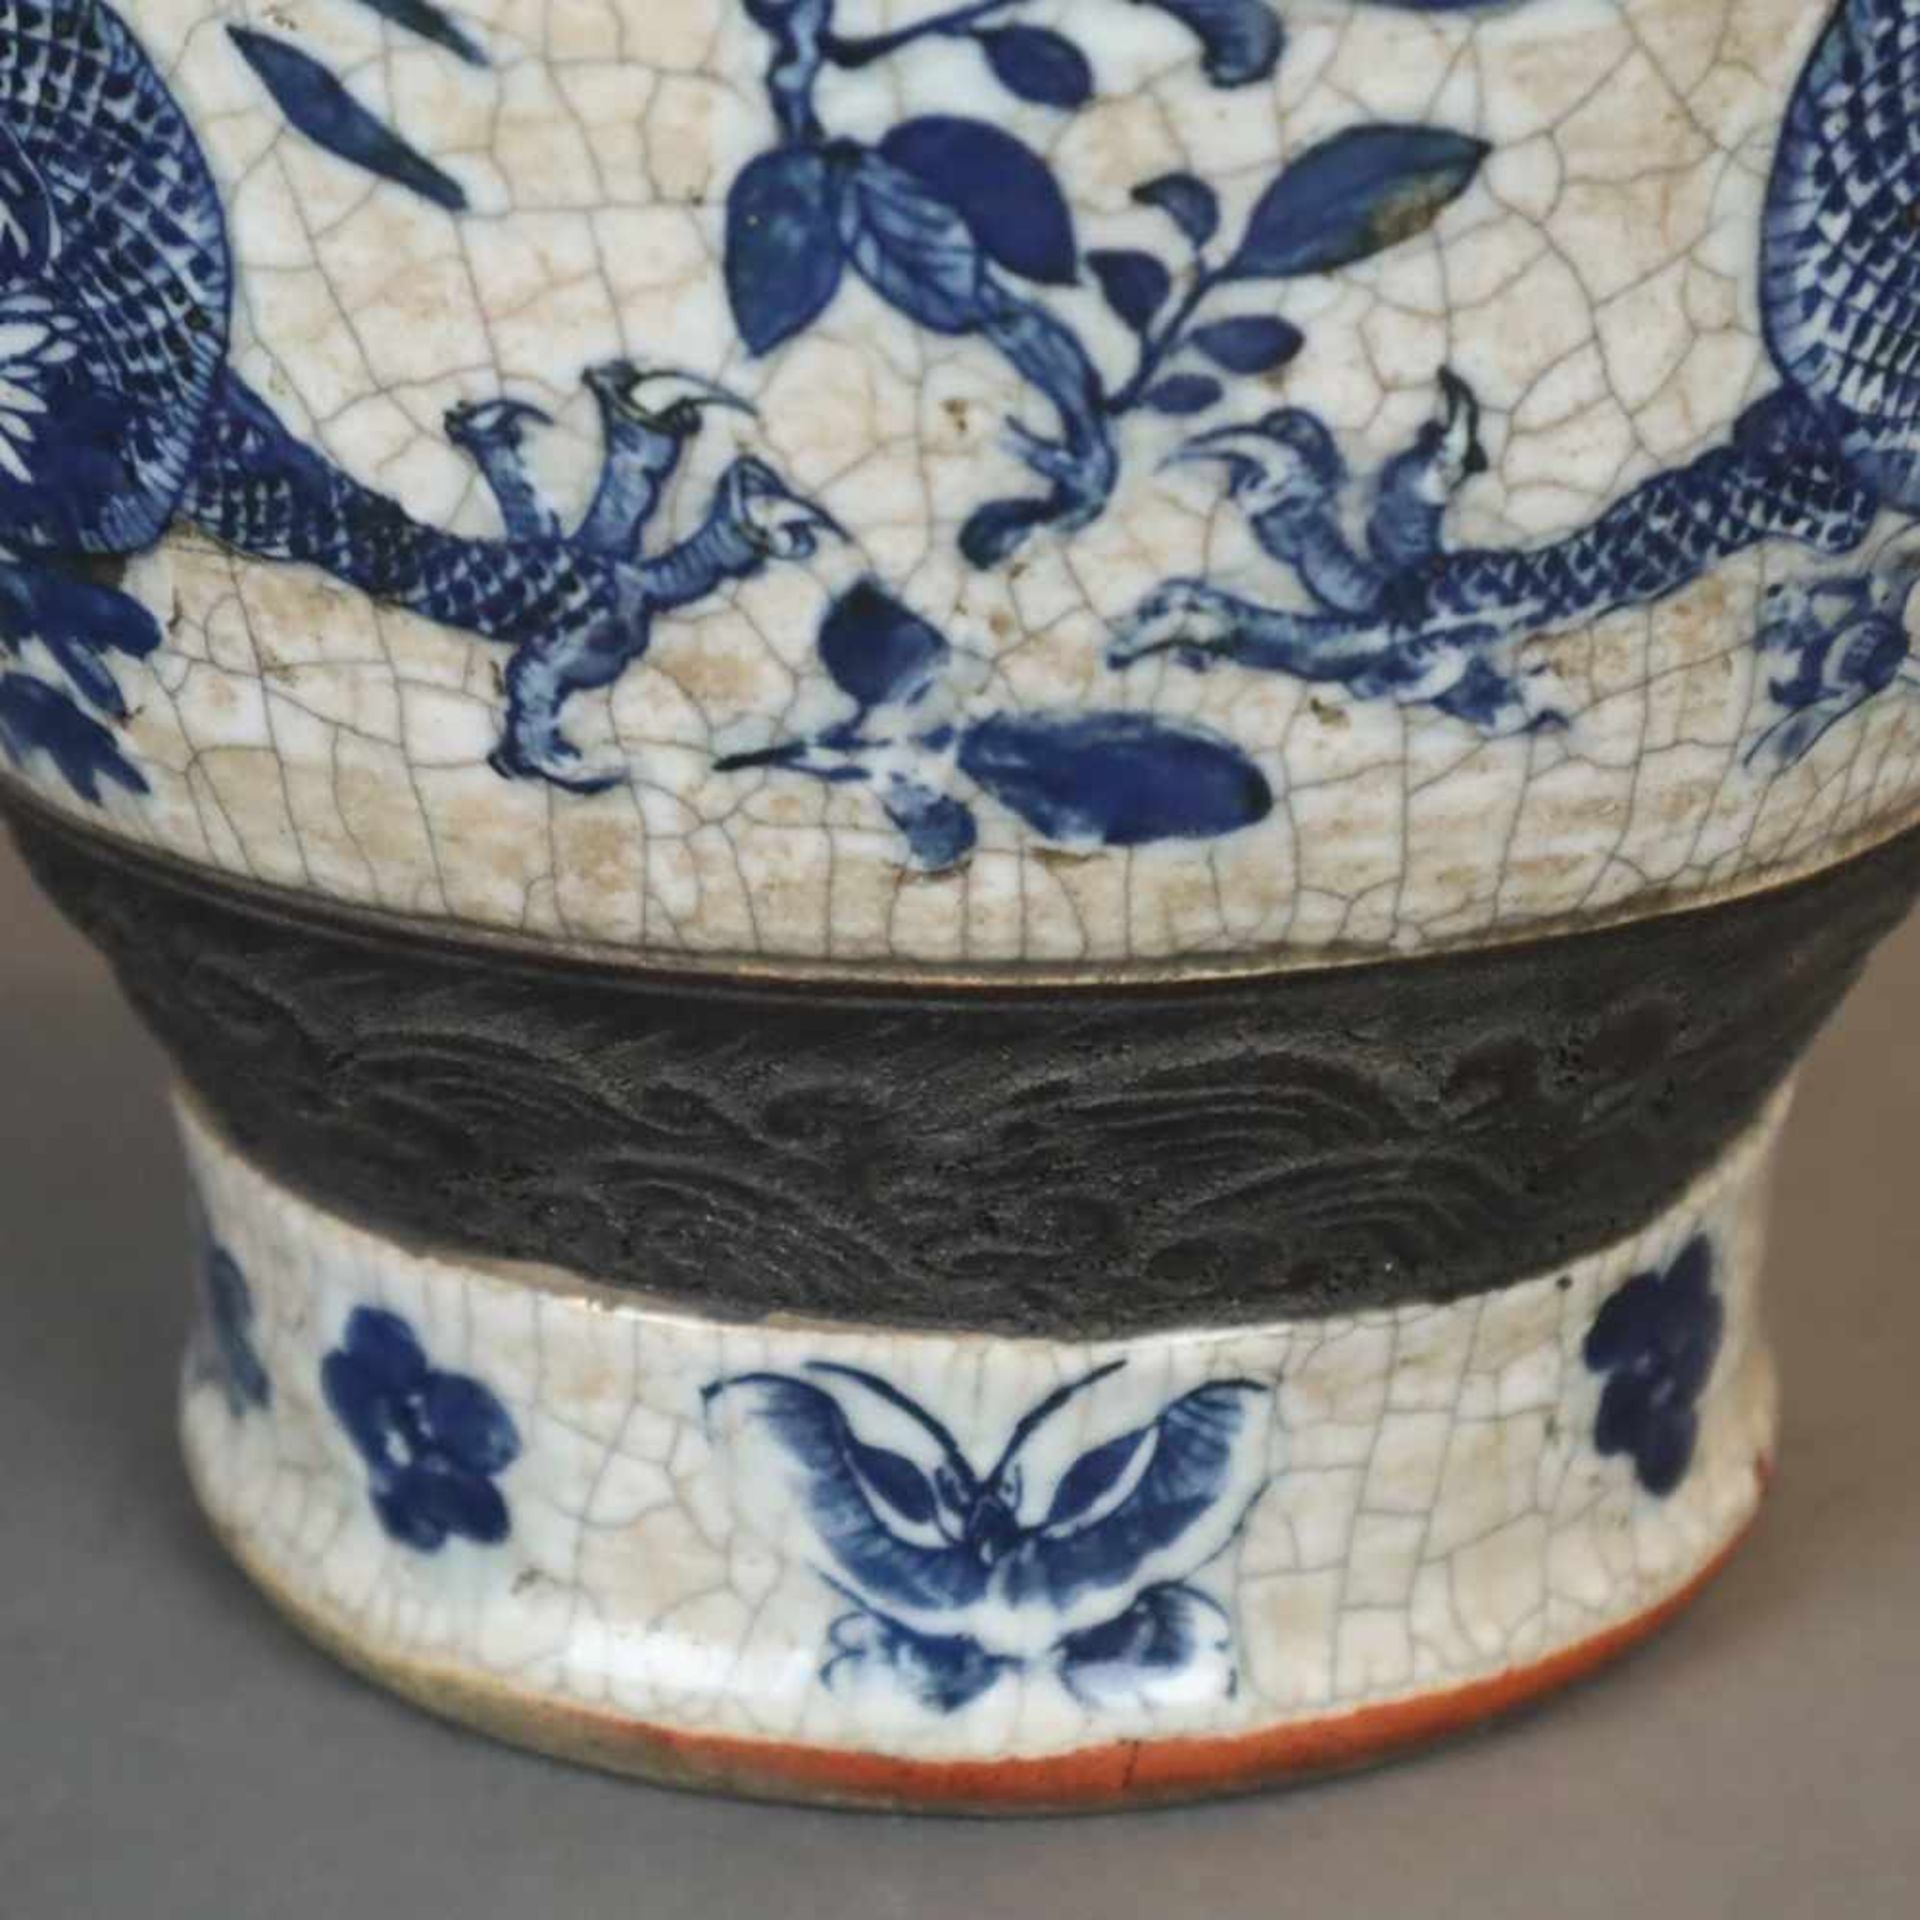 Balustervase - China, feine Handbemalung in Blau mit Drachen- und Blütenmotiven, gräuliche Glasur - Bild 9 aus 10